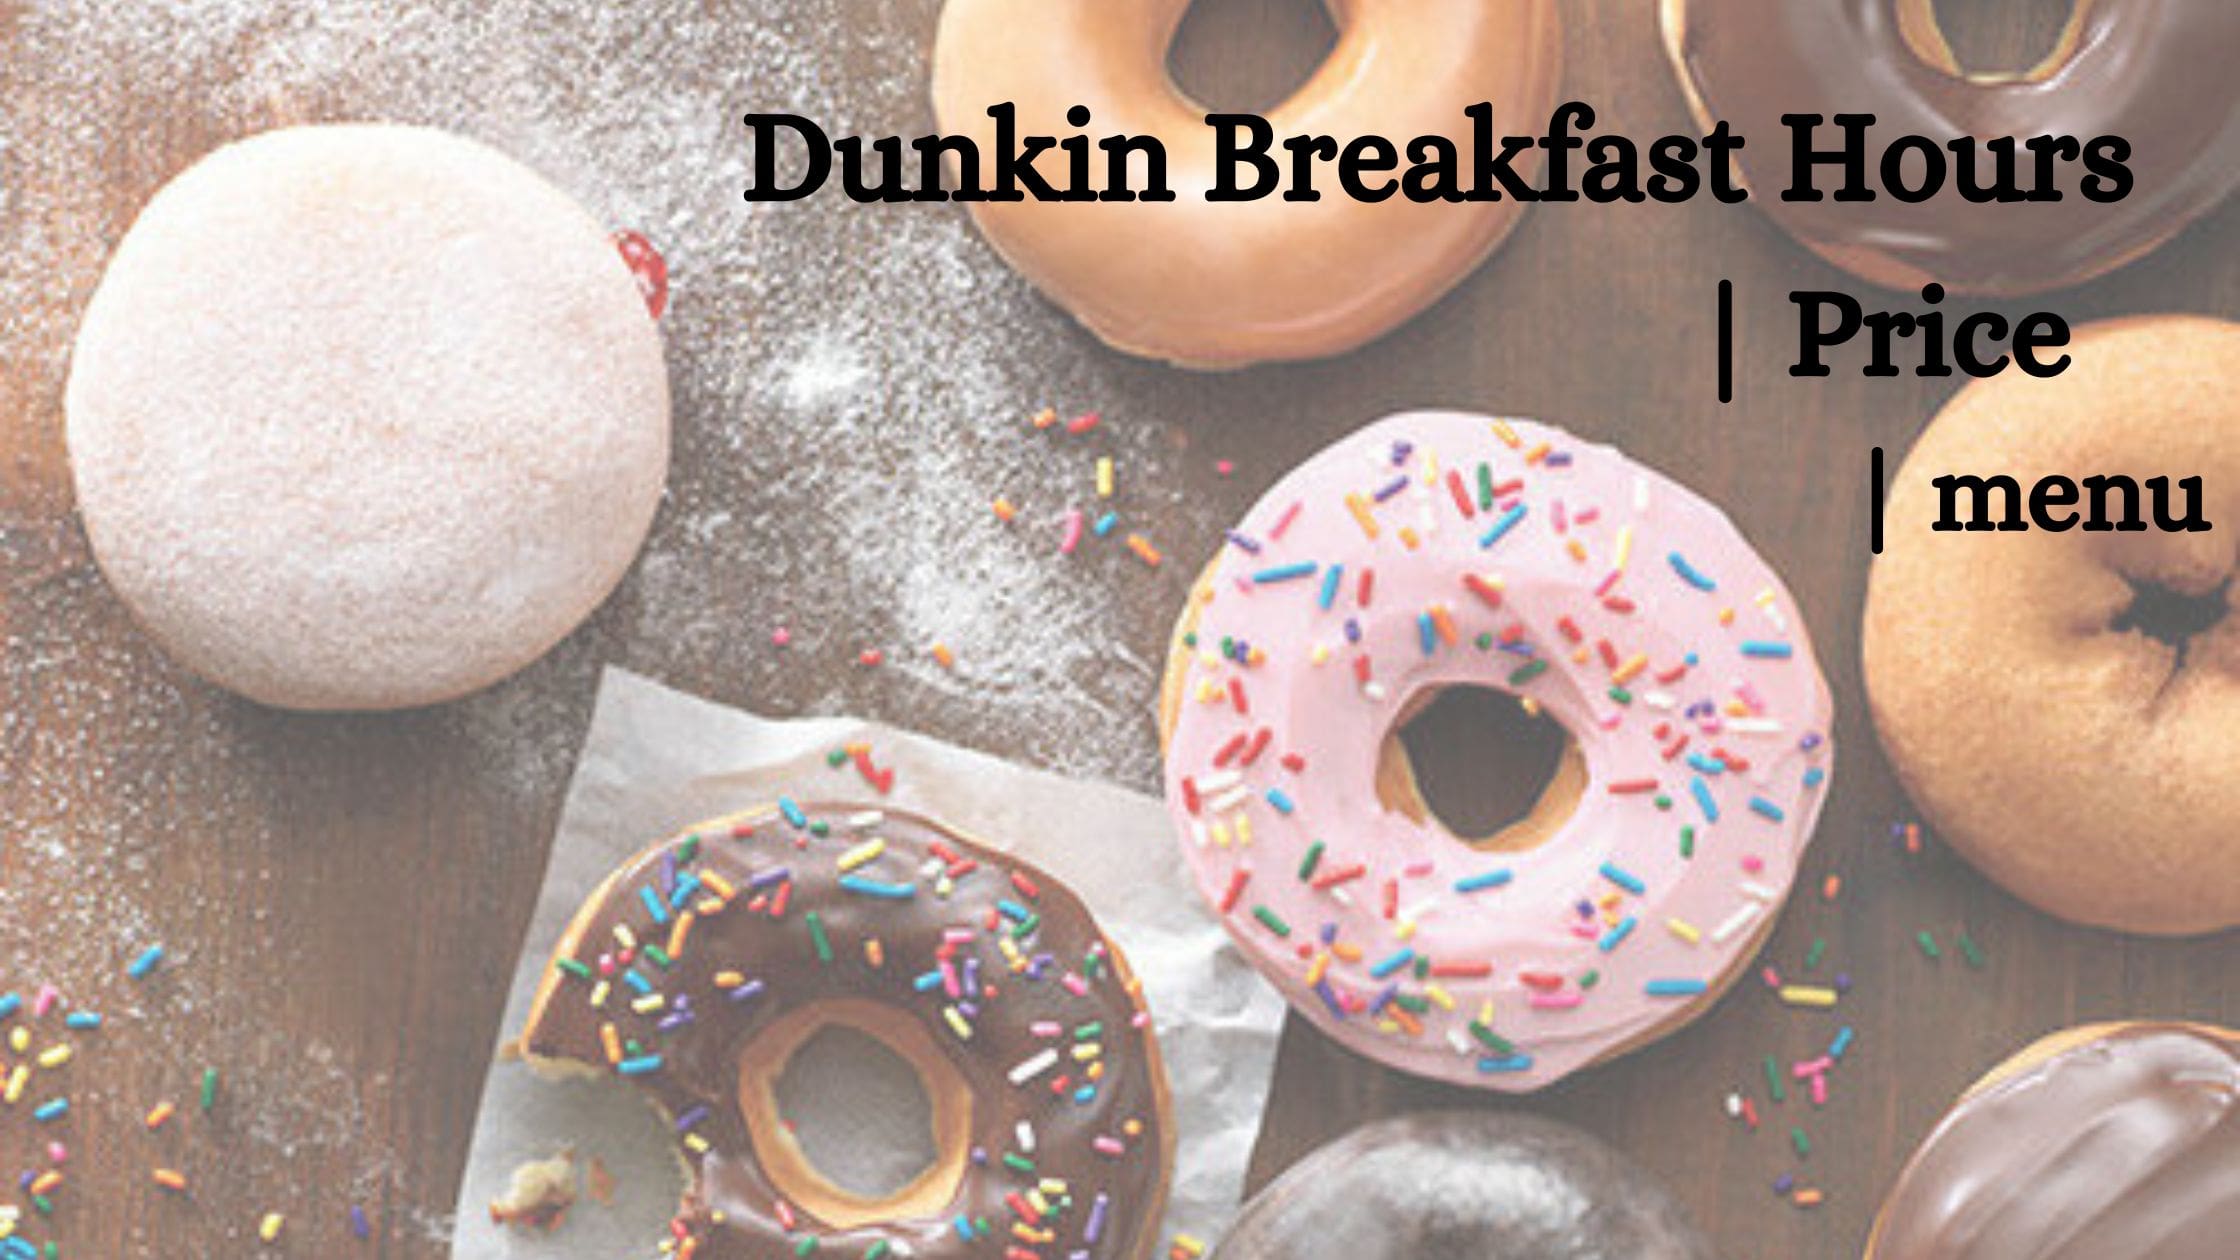 Dunking Breakfast Hours